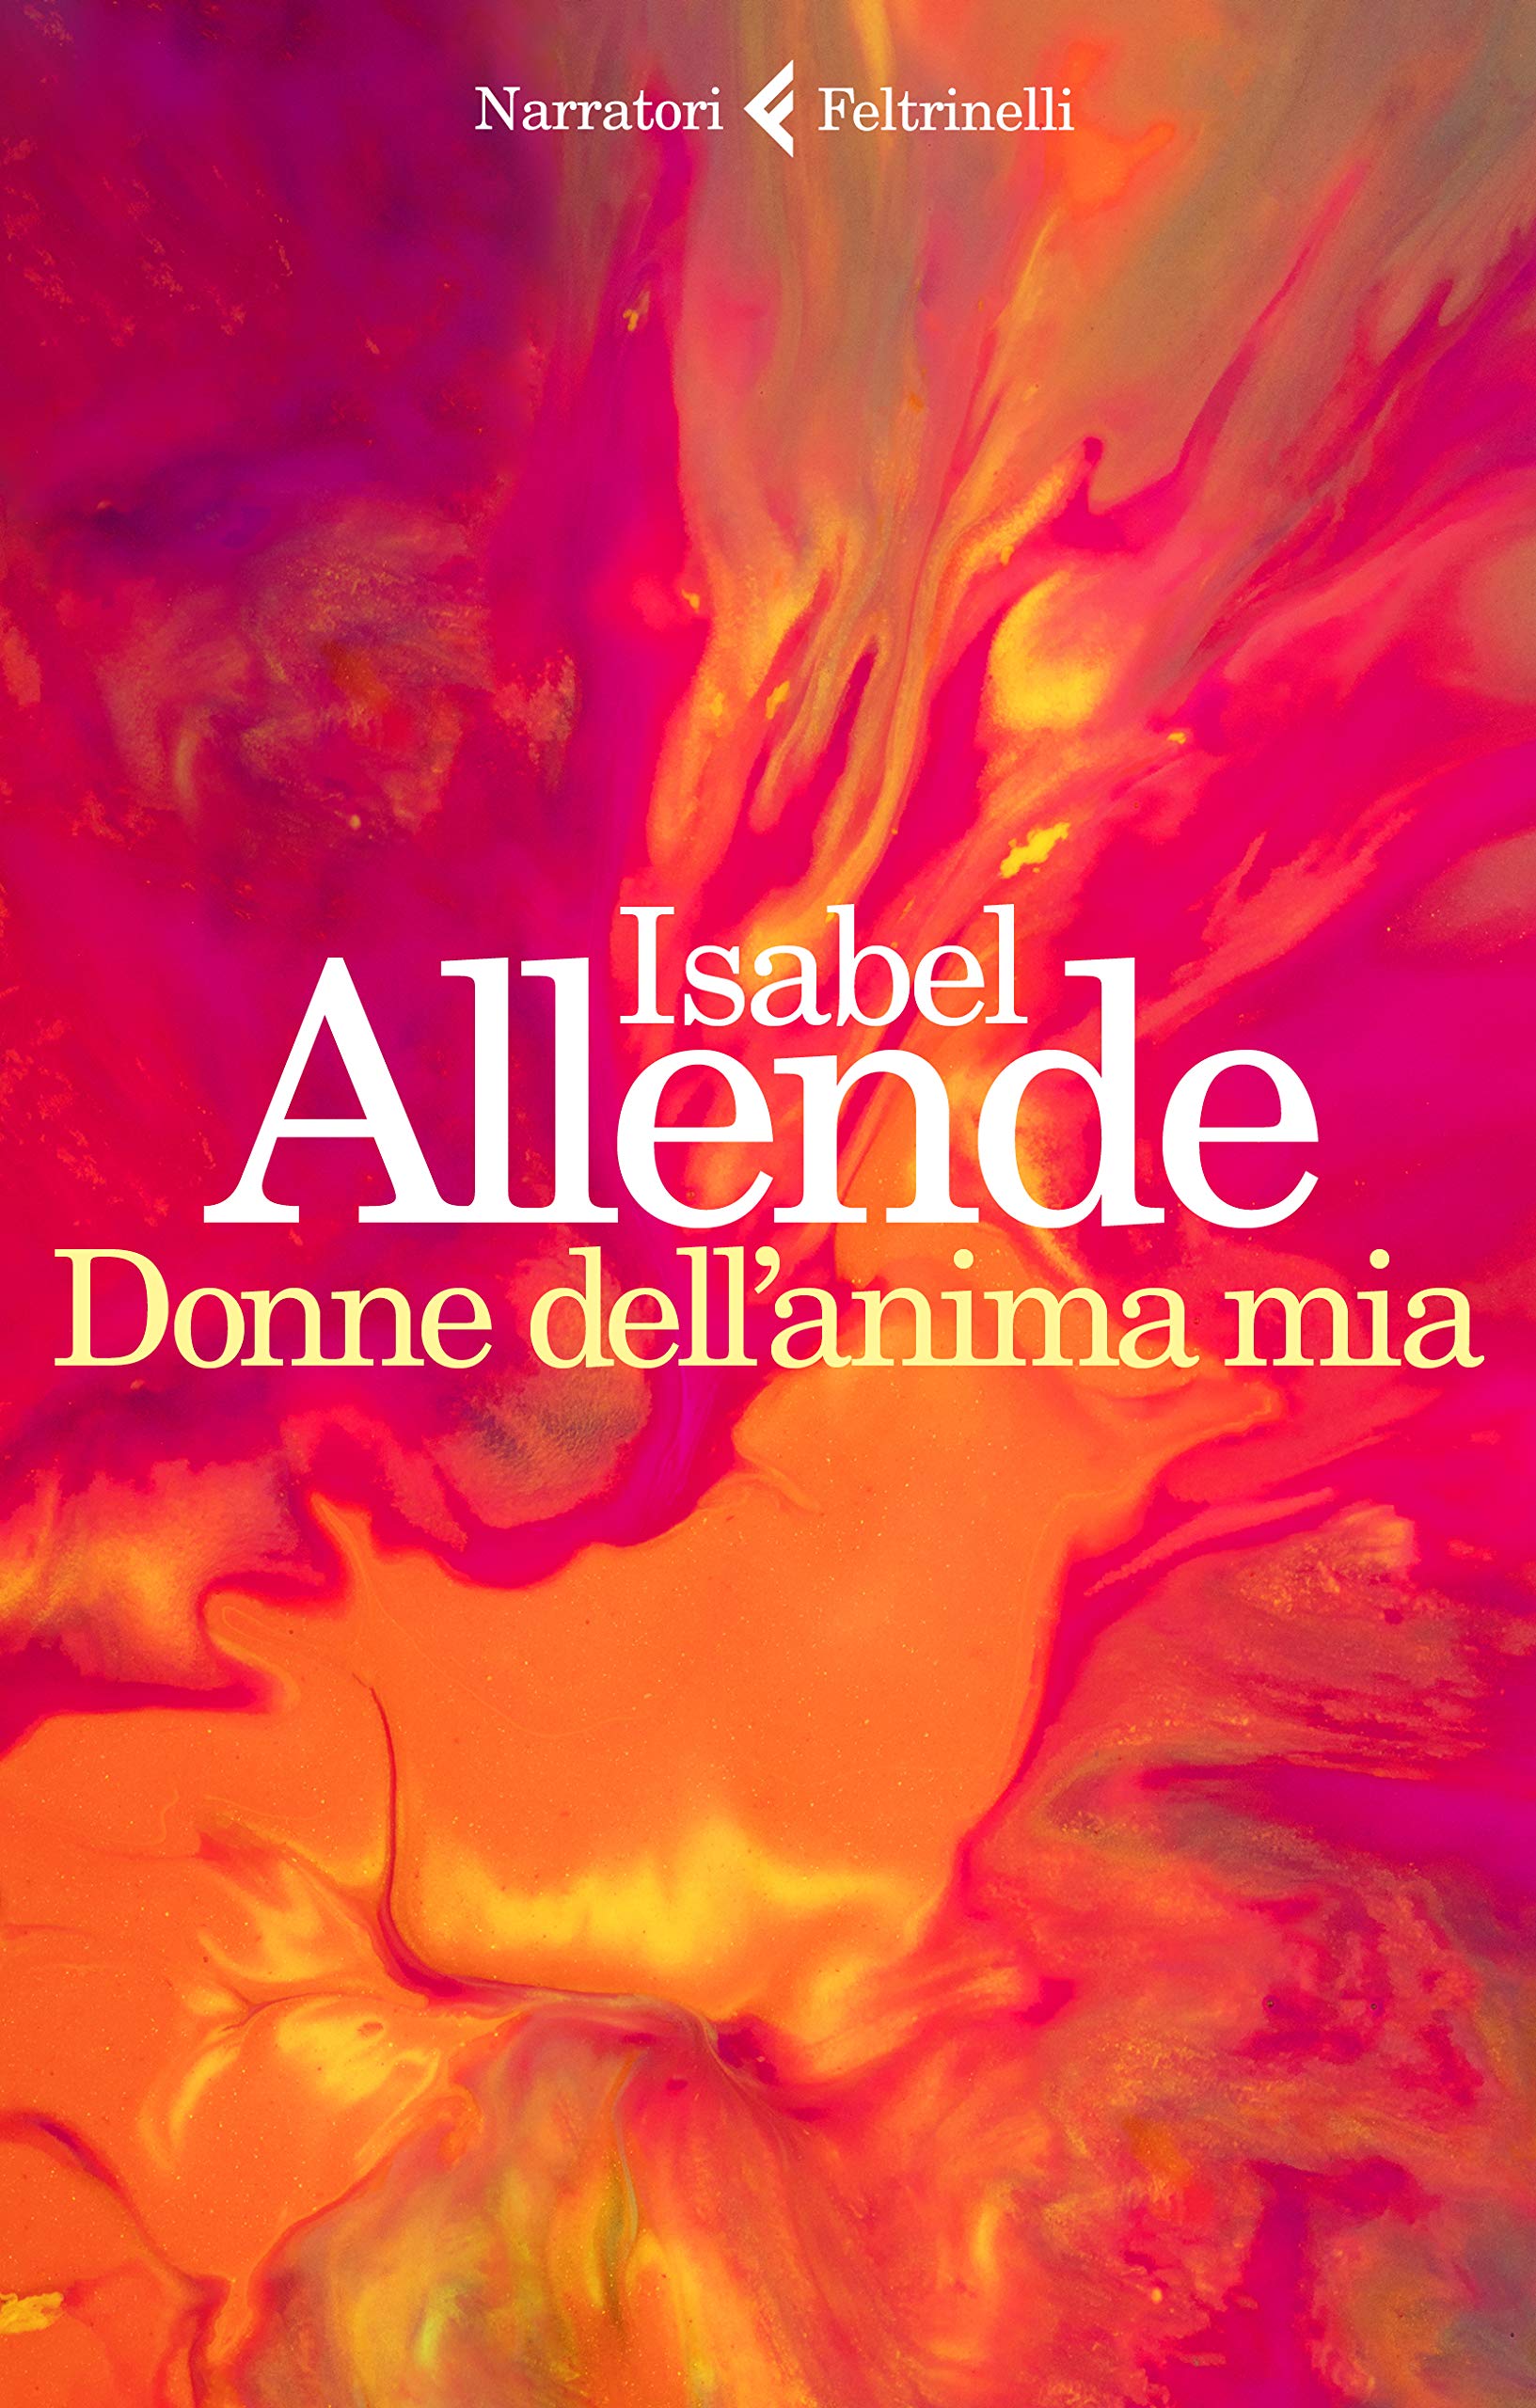 Donne dell'anima mia Isabel Allende